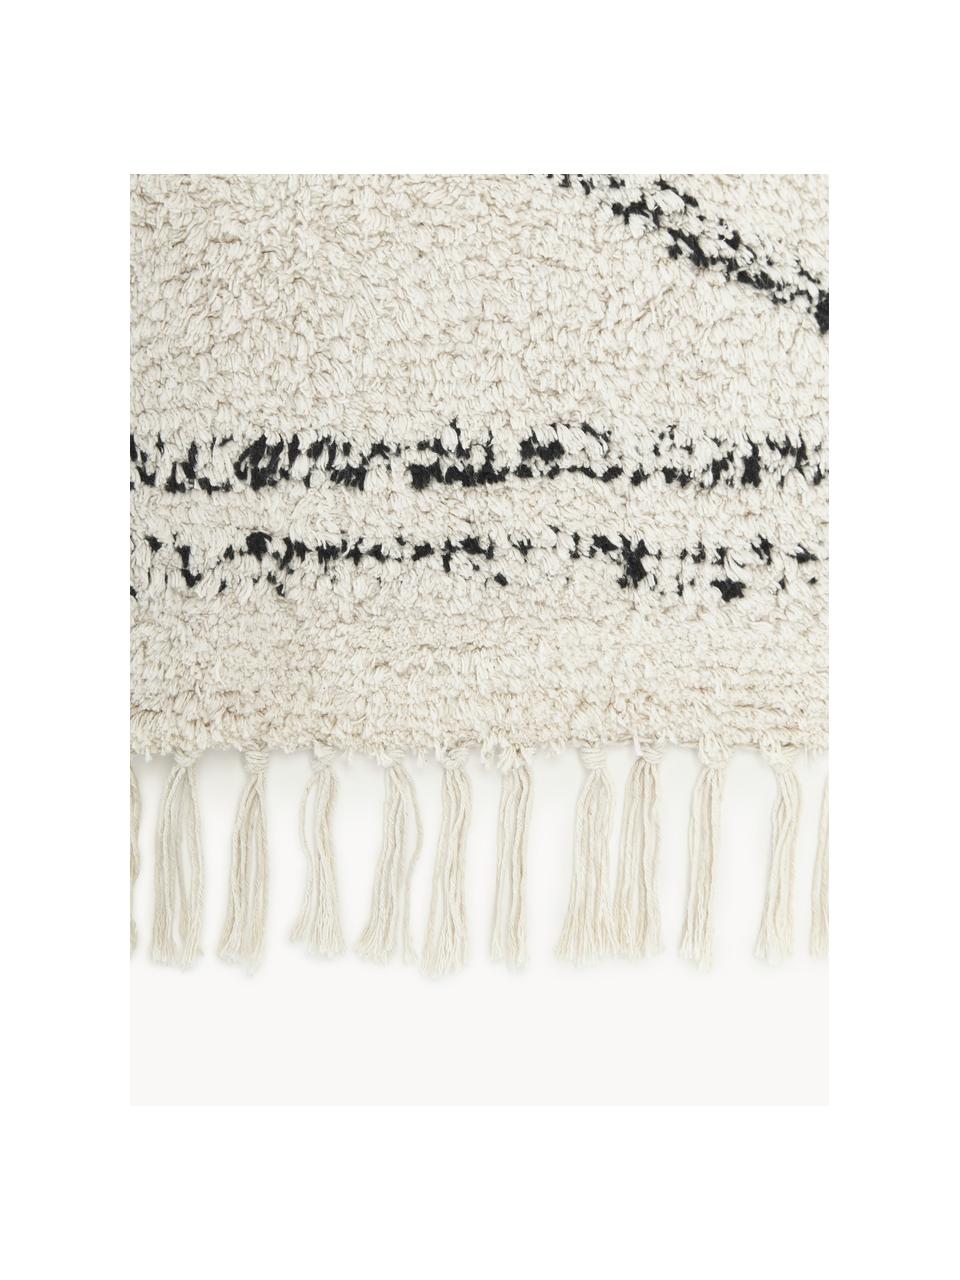 Handgetufteter Baumwollteppich Asisa mit Zickzack-Muster und Fransen, 100% Baumwolle, Hellbeige, Schwarz, B 200 x L 300 cm (Grösse L)